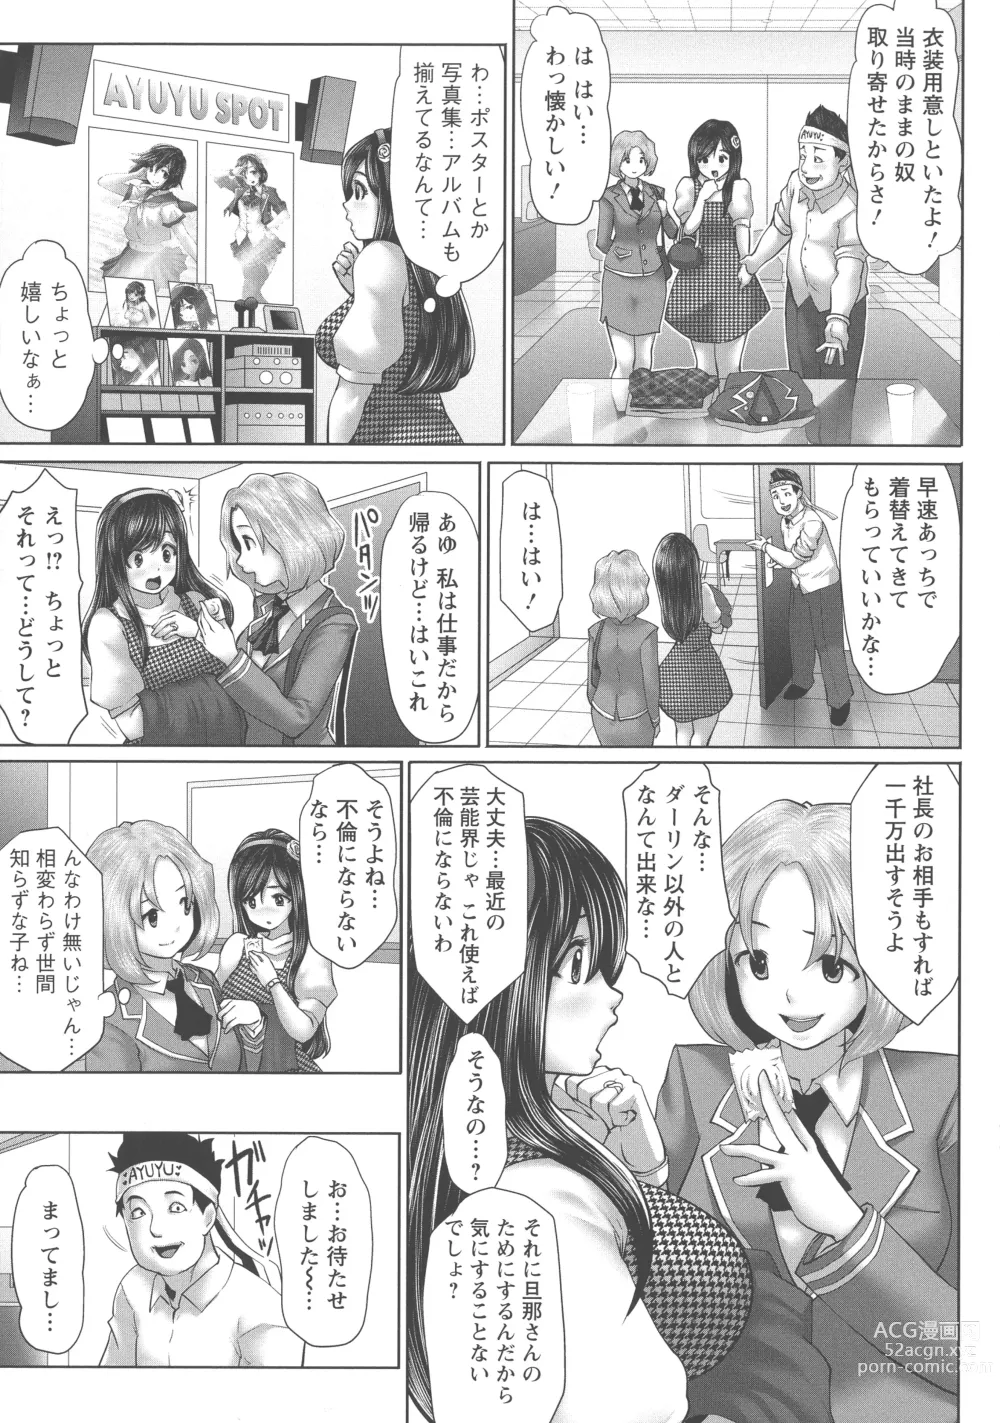 Page 12 of manga Idol Cum!